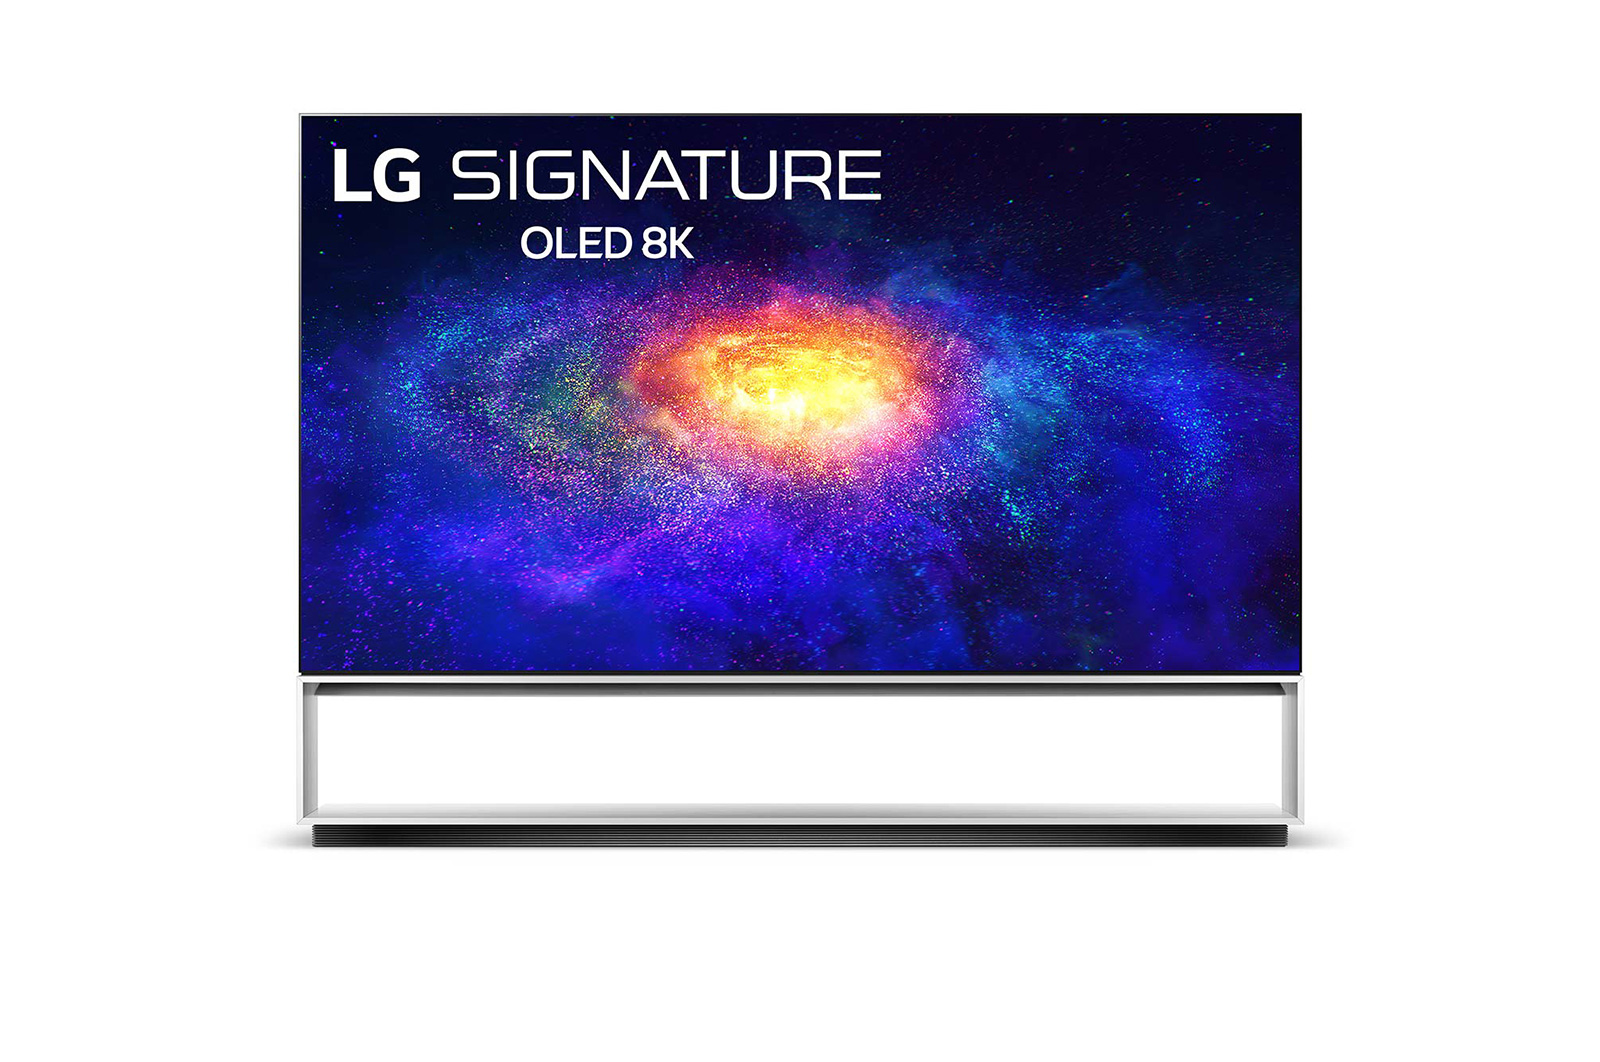 享受頂規88吋8K OLED TV視覺震撼LG創新技術全面升級進化- 電腦DIY